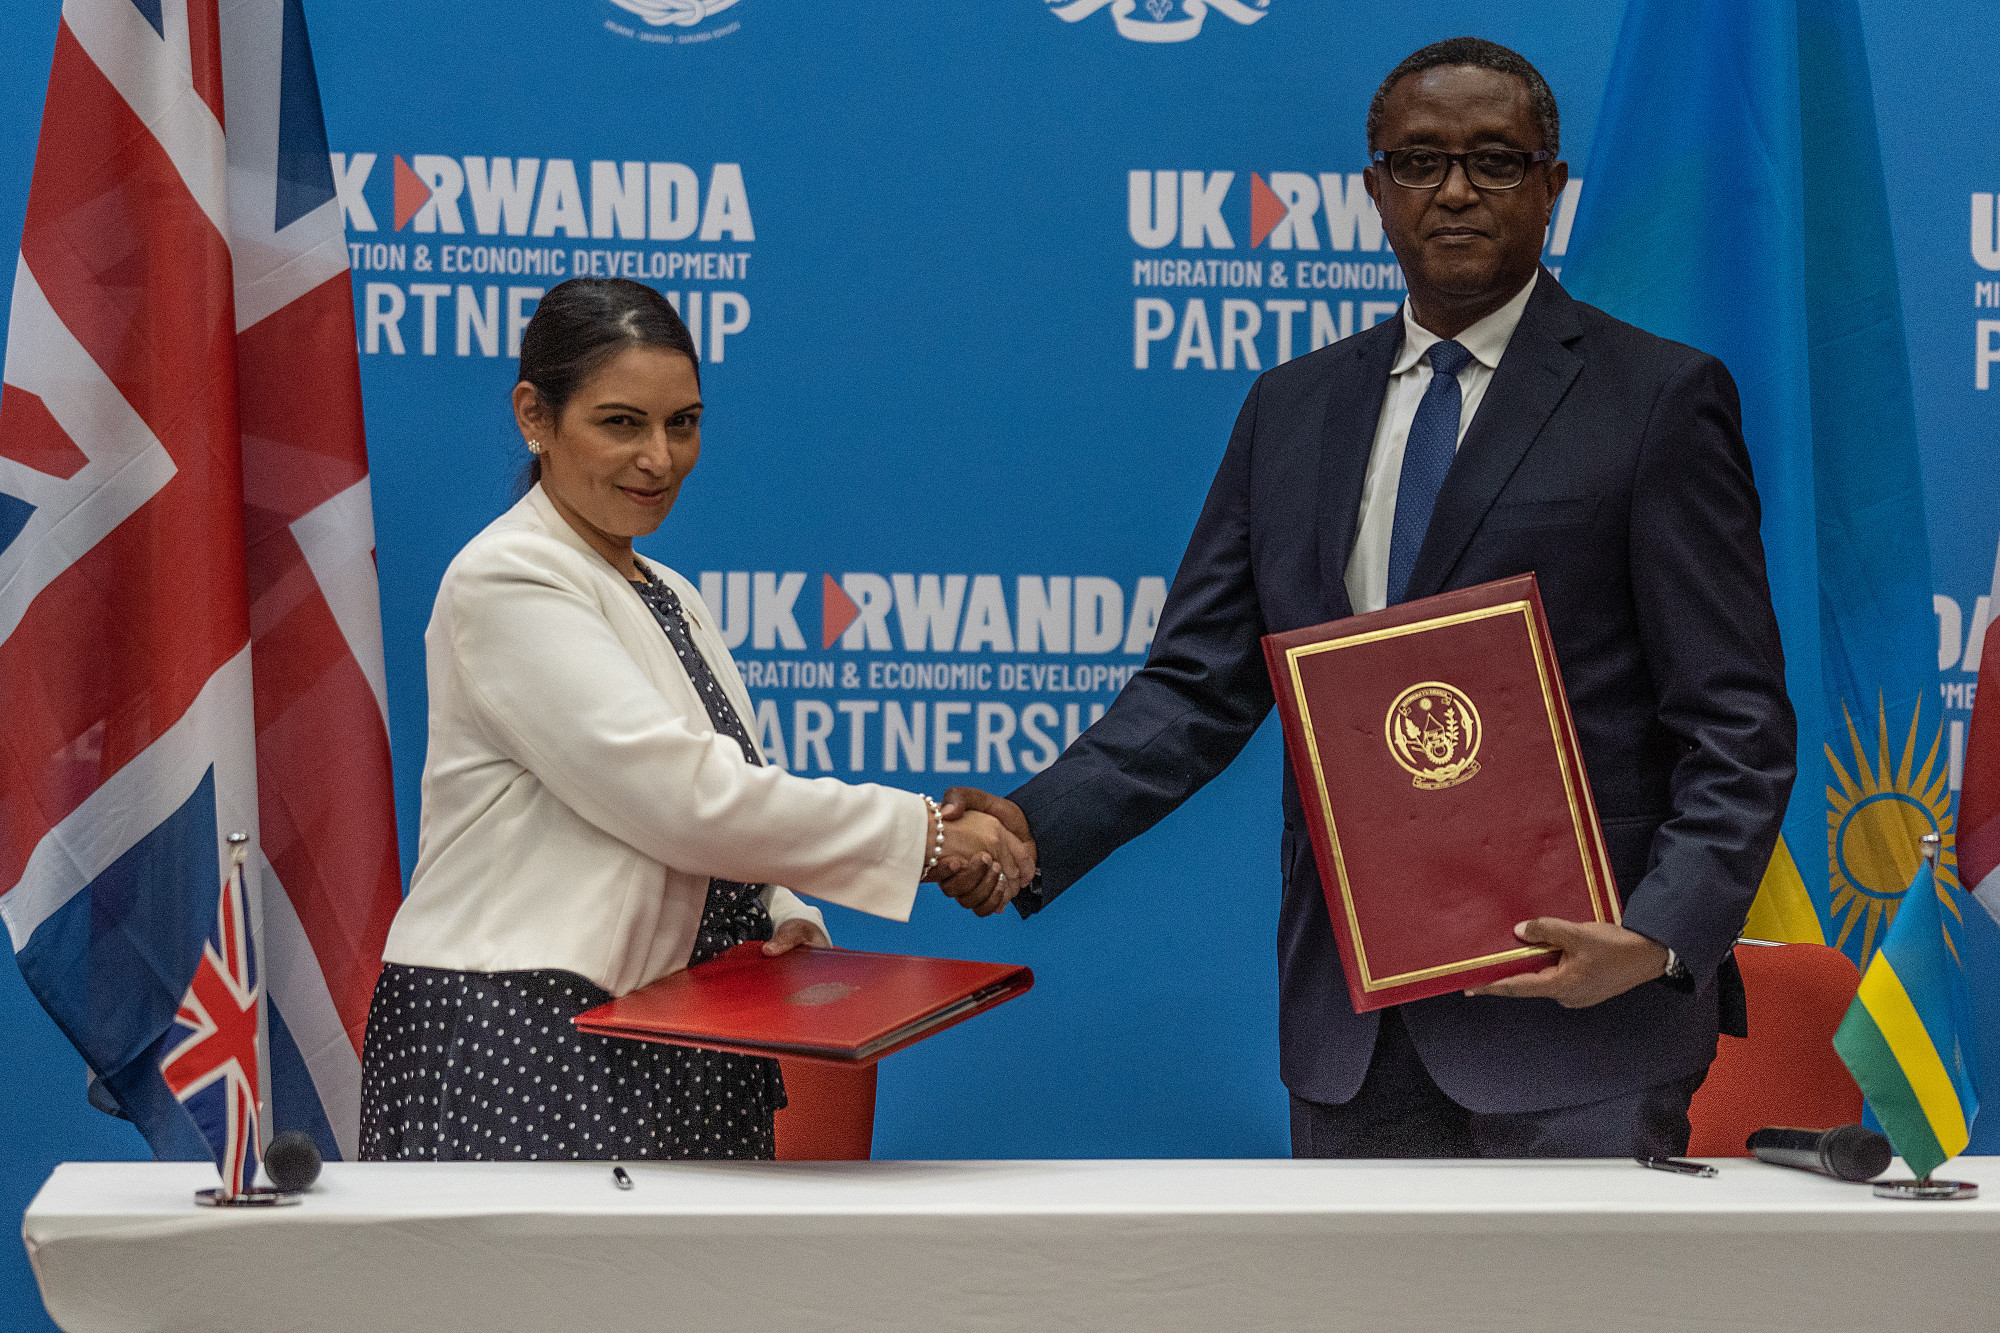 Ruanda kész több tízezer embert átvenni Nagy-Britanniától